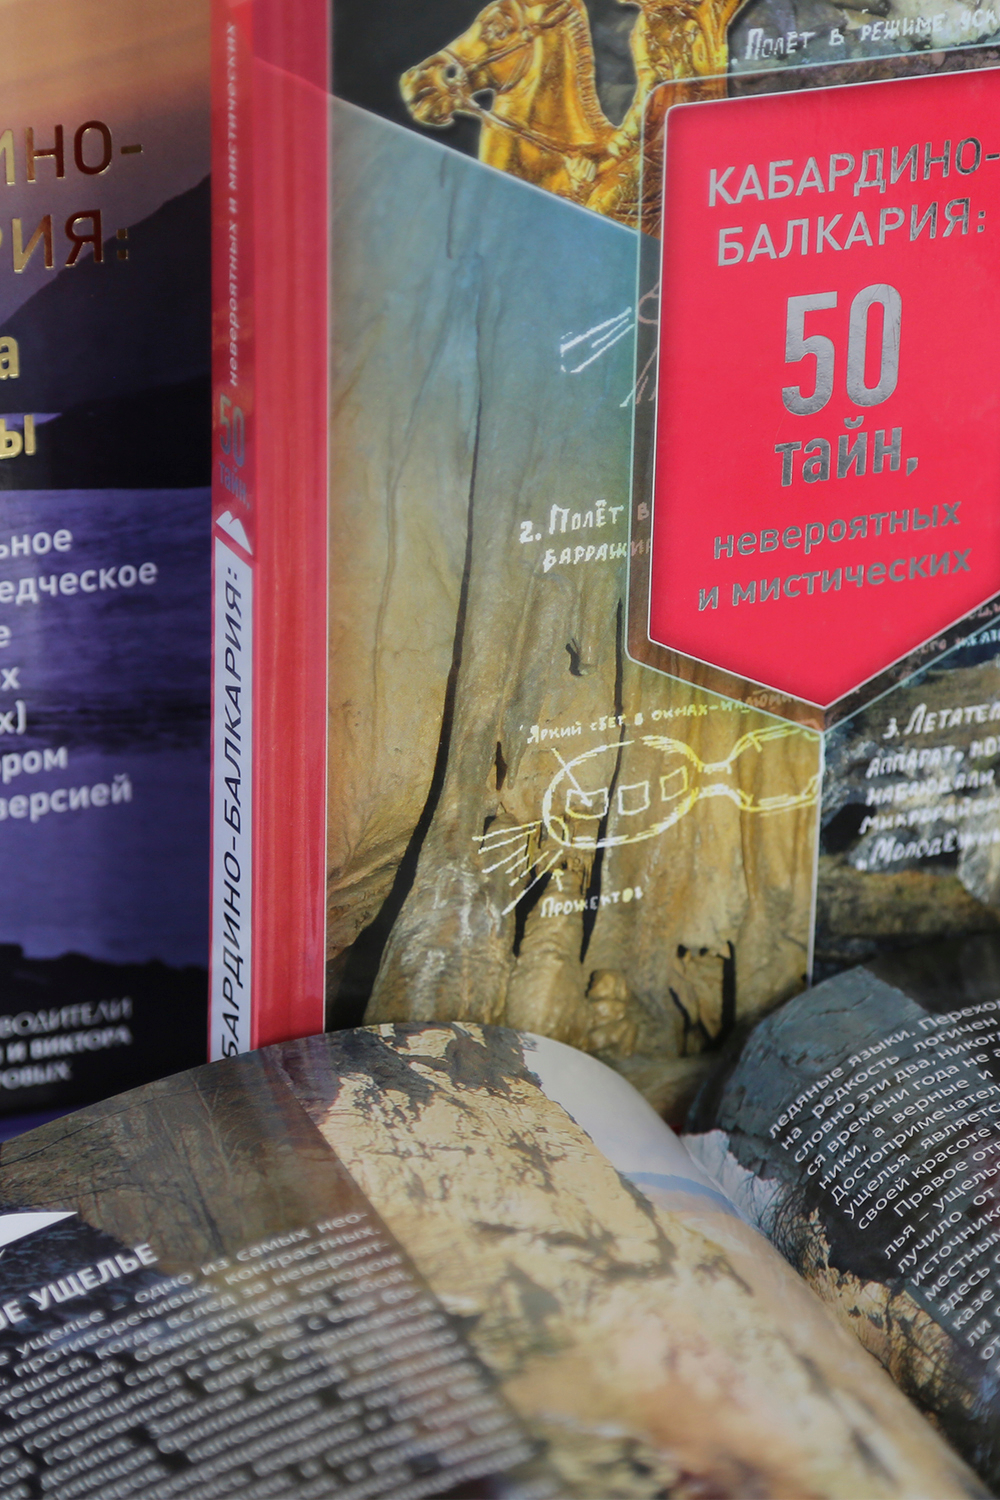 Кабардино-Балкария: 50 тайн, невероятных и мистических. Визуальный путеводитель с английской версией